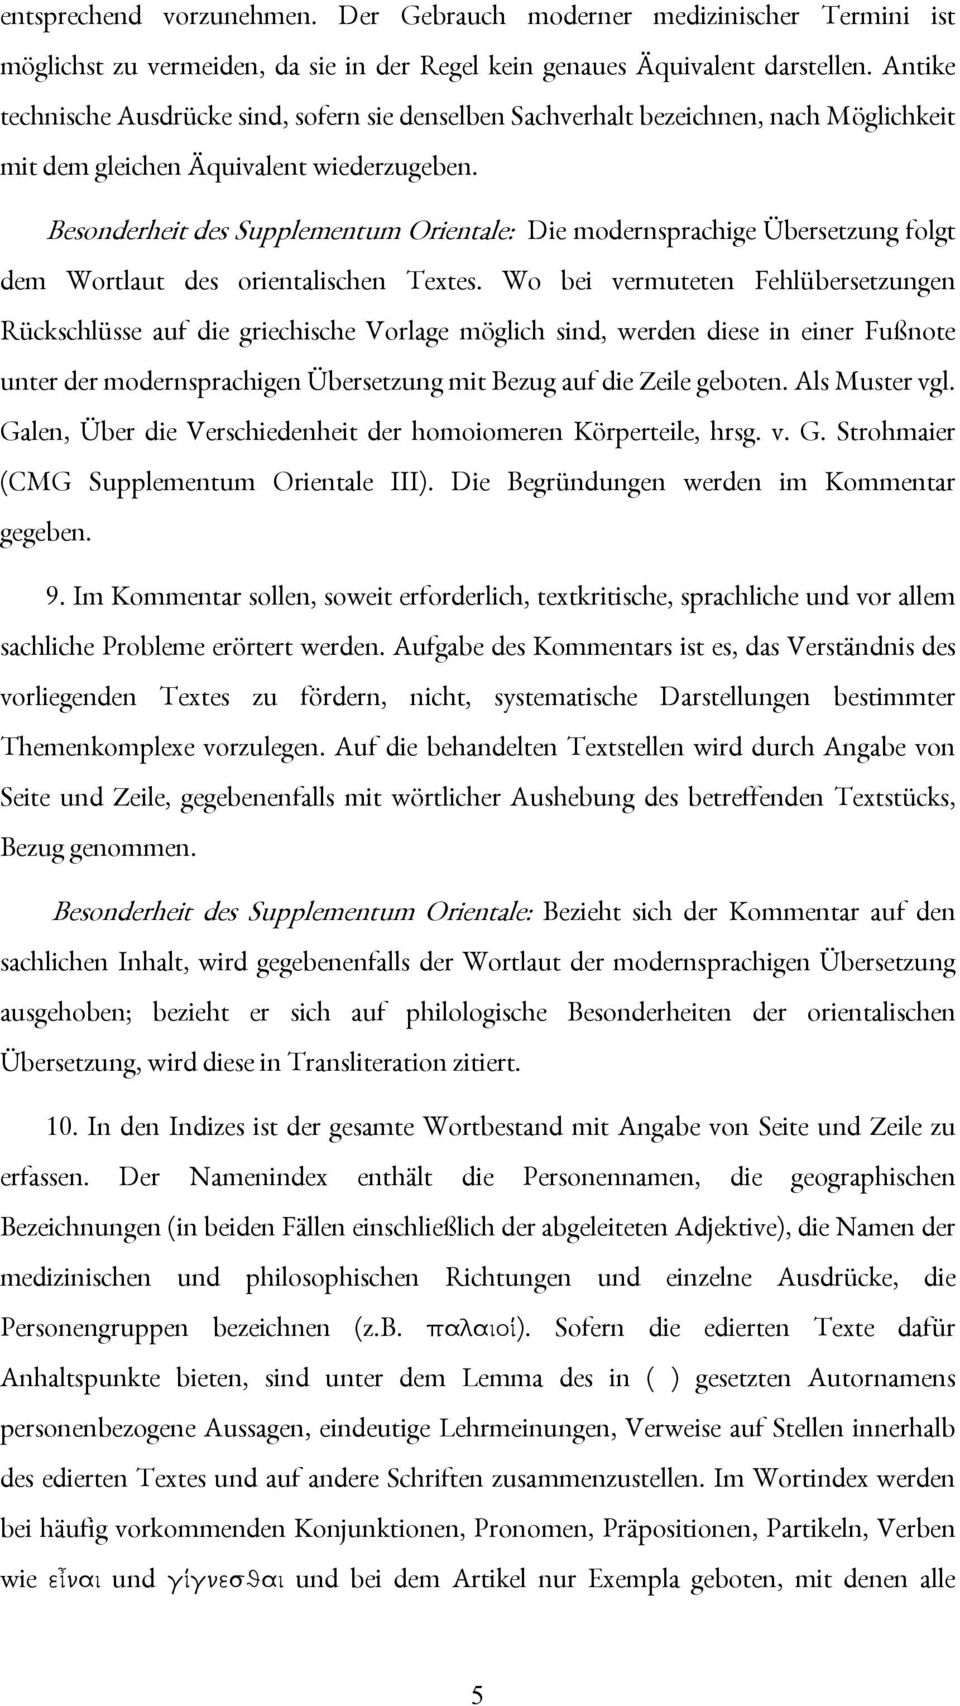 Besonderheit des Supplementum Orientale: Die modernsprachige Übersetzung folgt dem Wortlaut des orientalischen Textes.